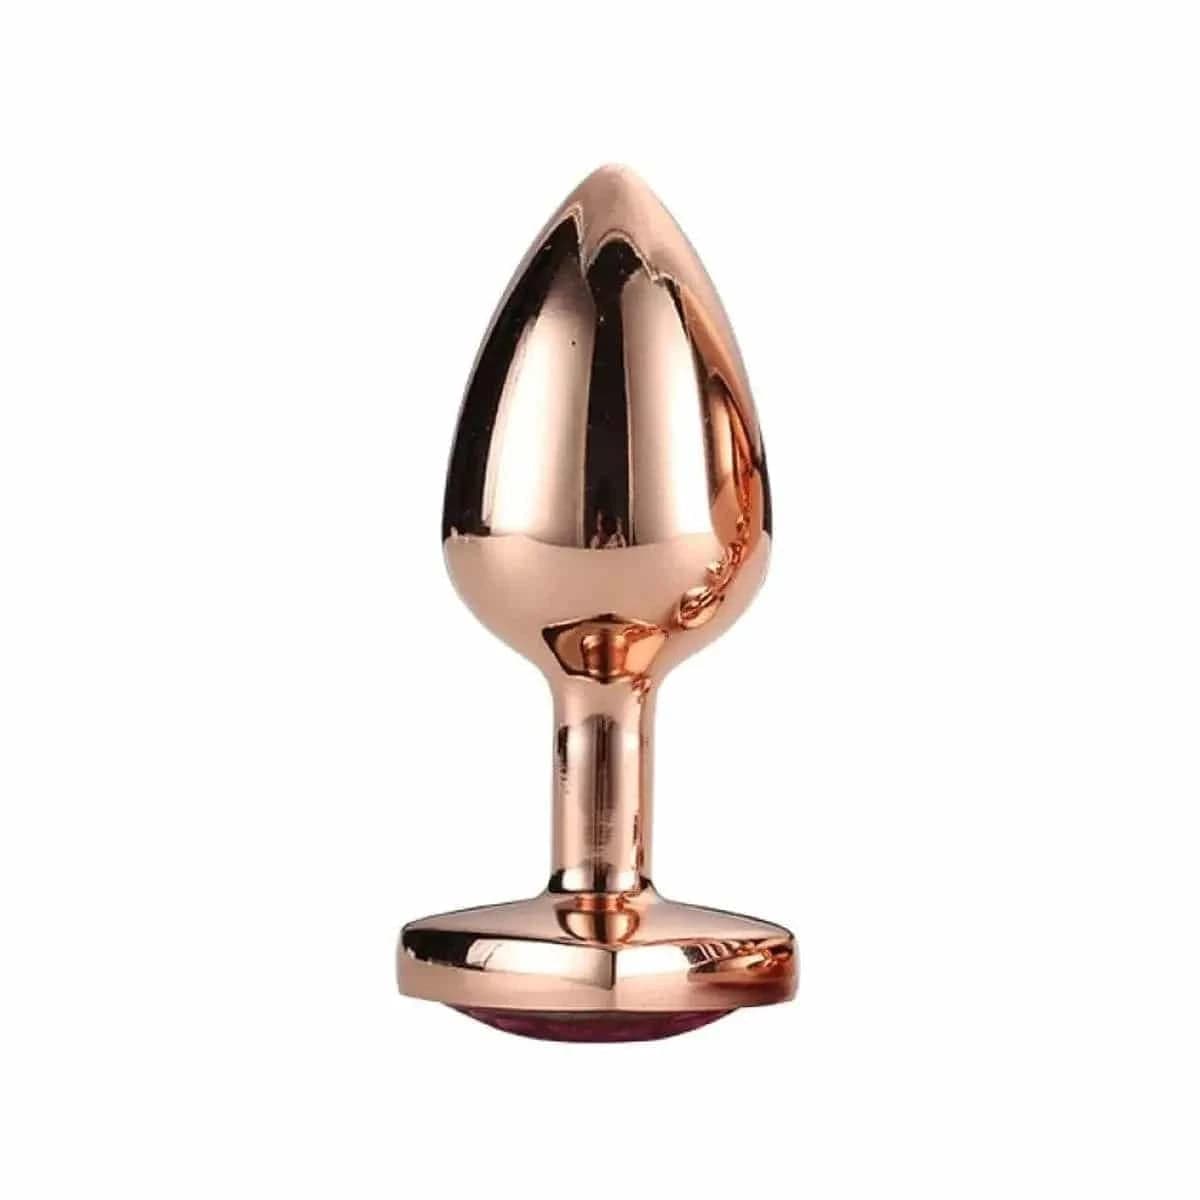 Plug de Metal GLEAMING LOVE Gold Pequeno, Brilhante Rosa, 7.1cm Ø2.7cm  Dream Toys   